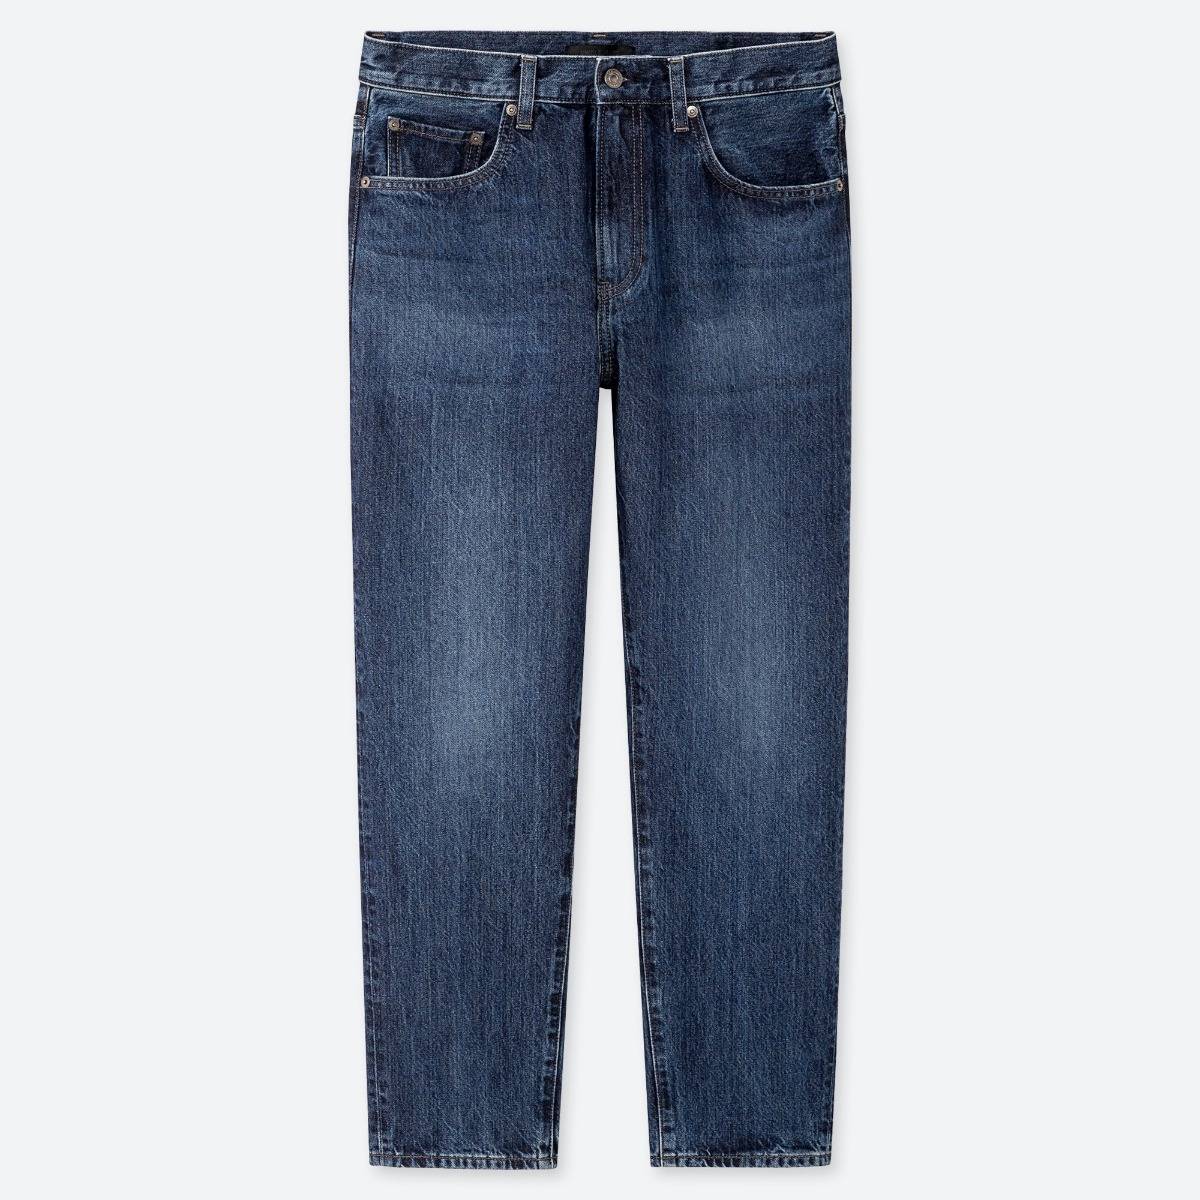 Unsere Top Produkte - Entdecken Sie bei uns die Indigo jeans entsprechend Ihrer Wünsche